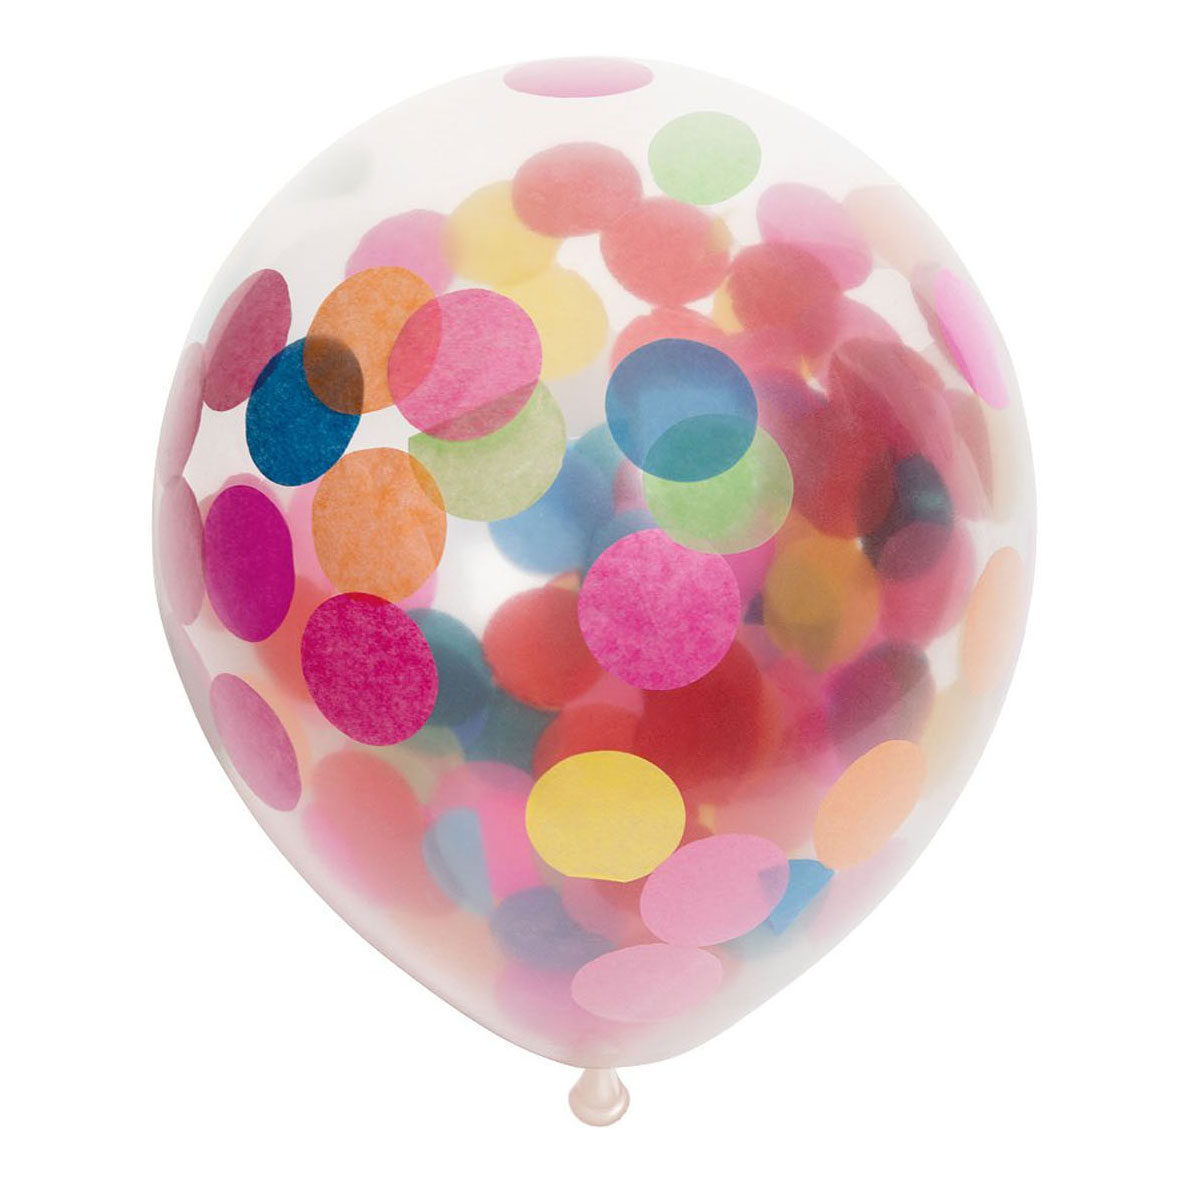 3 Pcs Ballons de Plage,Ballons de Plage Gonflables Portables pour